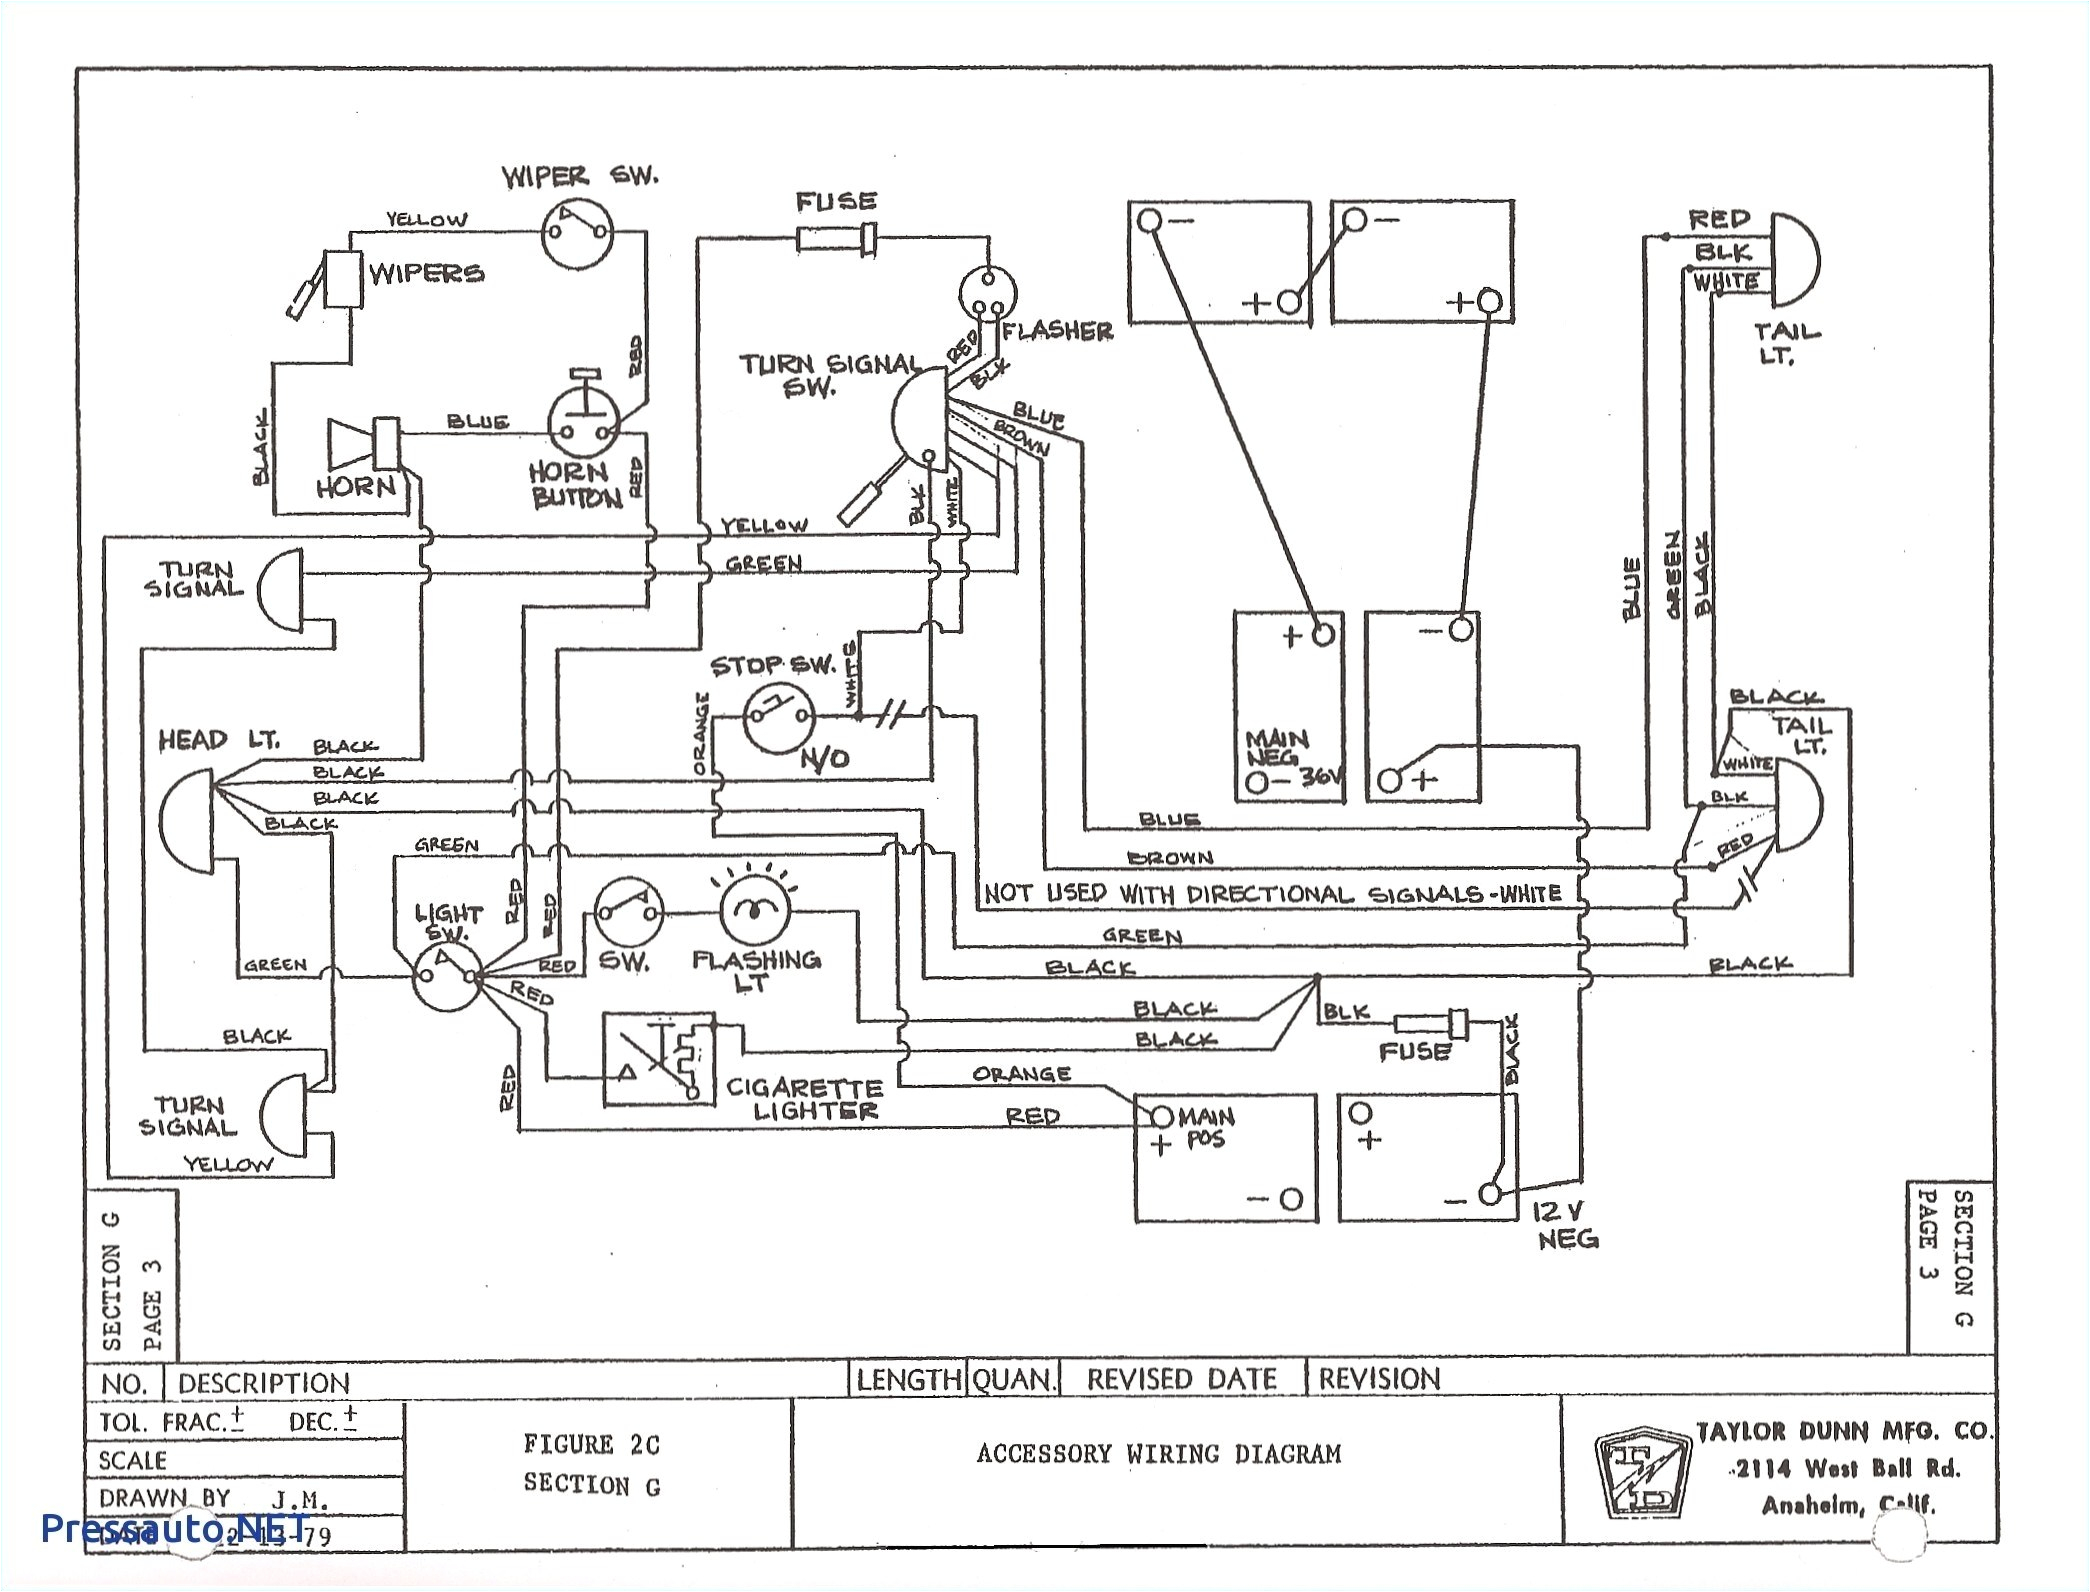 48 volt ez go wiring diagram wiring diagram sheet 48 volt ezgo wiring diagram 2000 ez